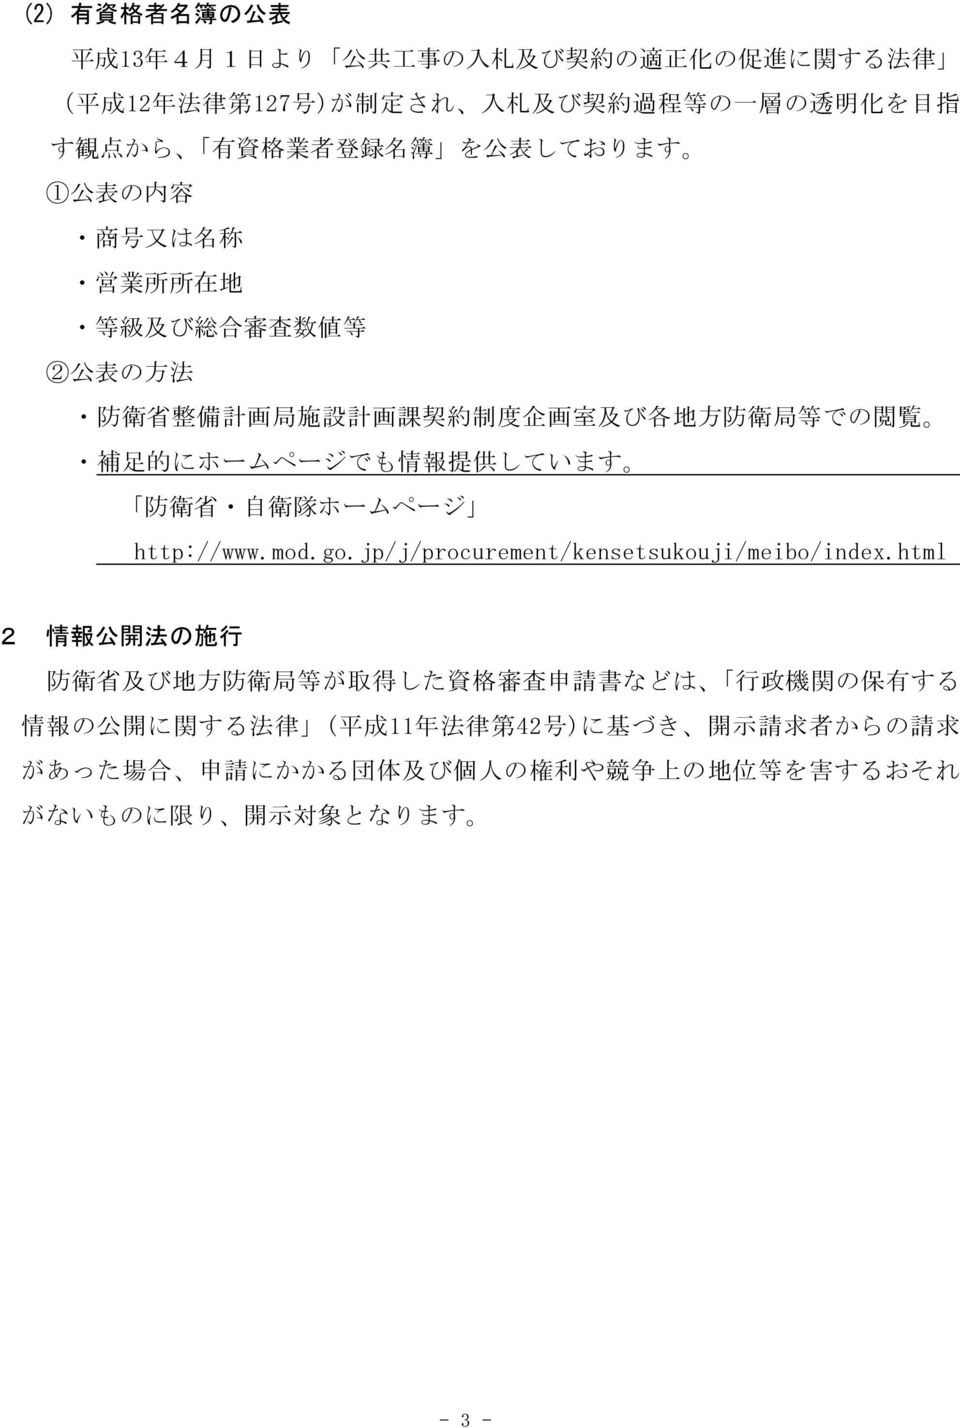 にホームページでも 情 報 提 供 しています 防 衛 省 自 衛 隊 ホームページ http://www.mod.go.jp/j/procurement/kensetsukouji/meibo/index.